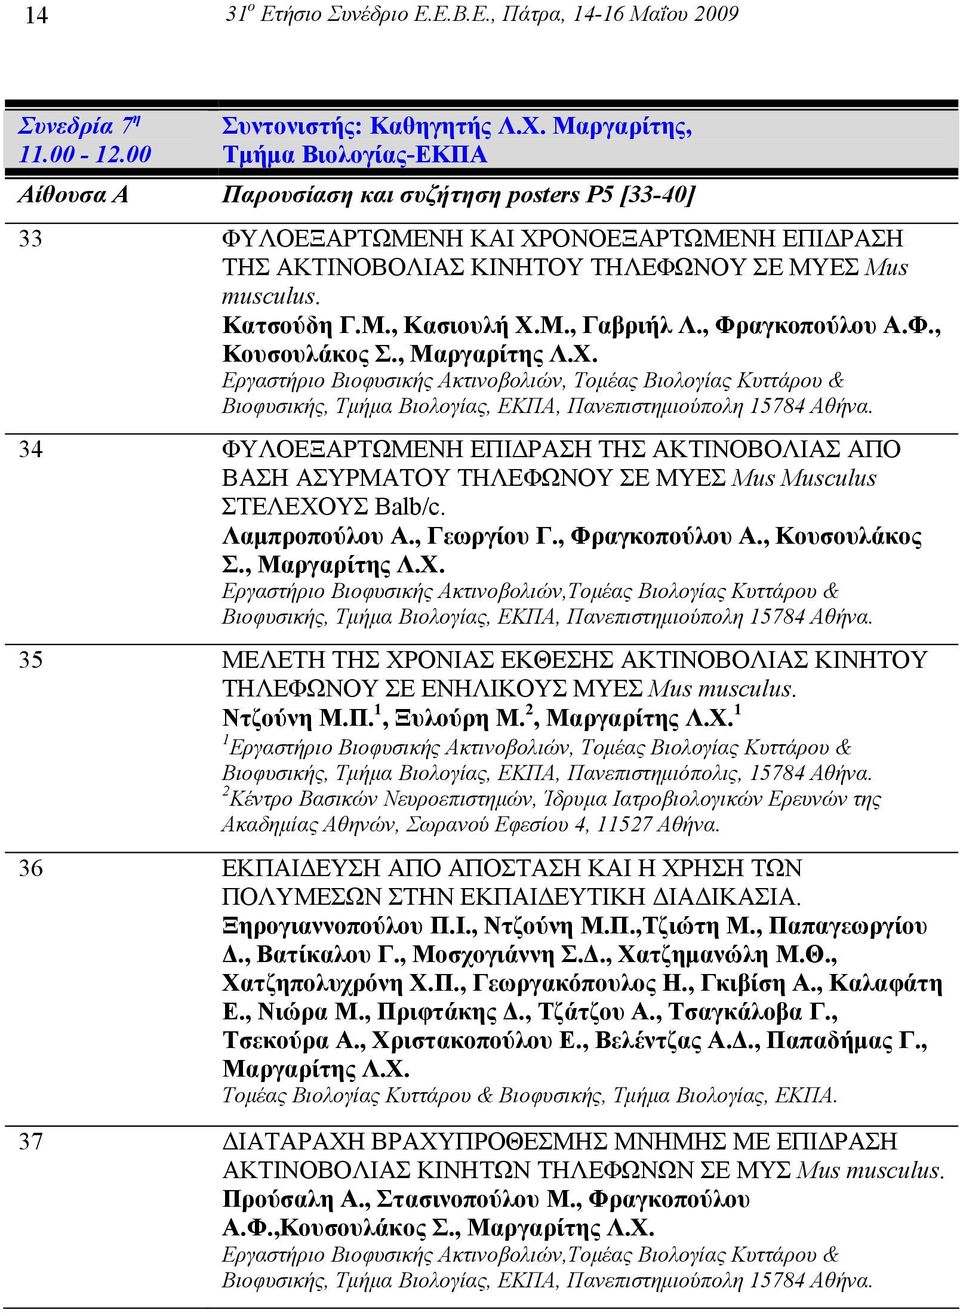 Κατσούδη Γ.M., Κασιουλή Χ.M., Γαβριήλ Λ., Φραγκοπούλου Α.Φ., Κουσουλάκος Σ., Μαργαρίτης Λ.Χ. Εργαστήριο Βιοφυσικής Ακτινοβολιών, Τοµέας Βιολογίας Κυττάρου & Βιοφυσικής, Τµήµα Βιολογίας, ΕΚΠΑ, Πανεπιστηµιούπολη 15784 Αθήνα.